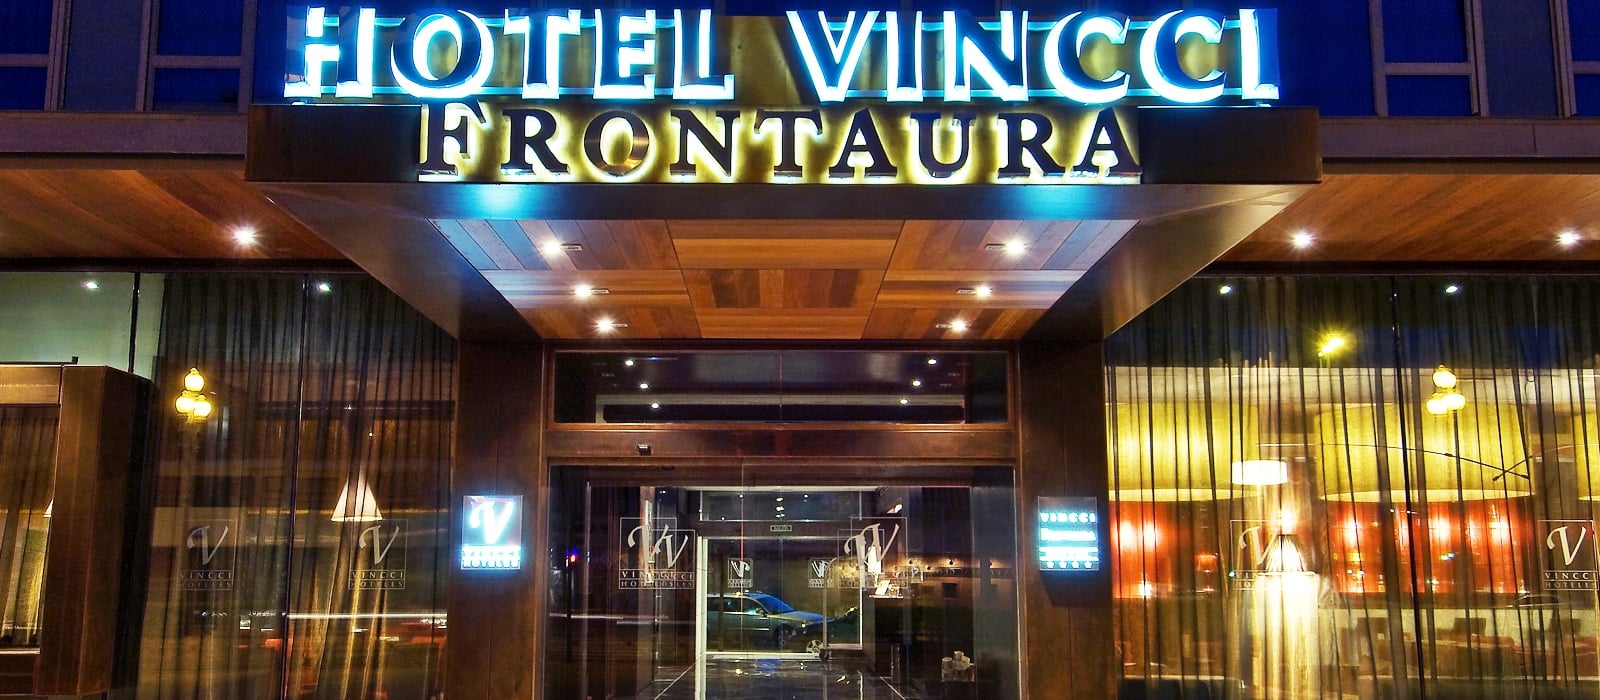 Façade-Hotel Valladolid Frontaura - Vincci Hoteles